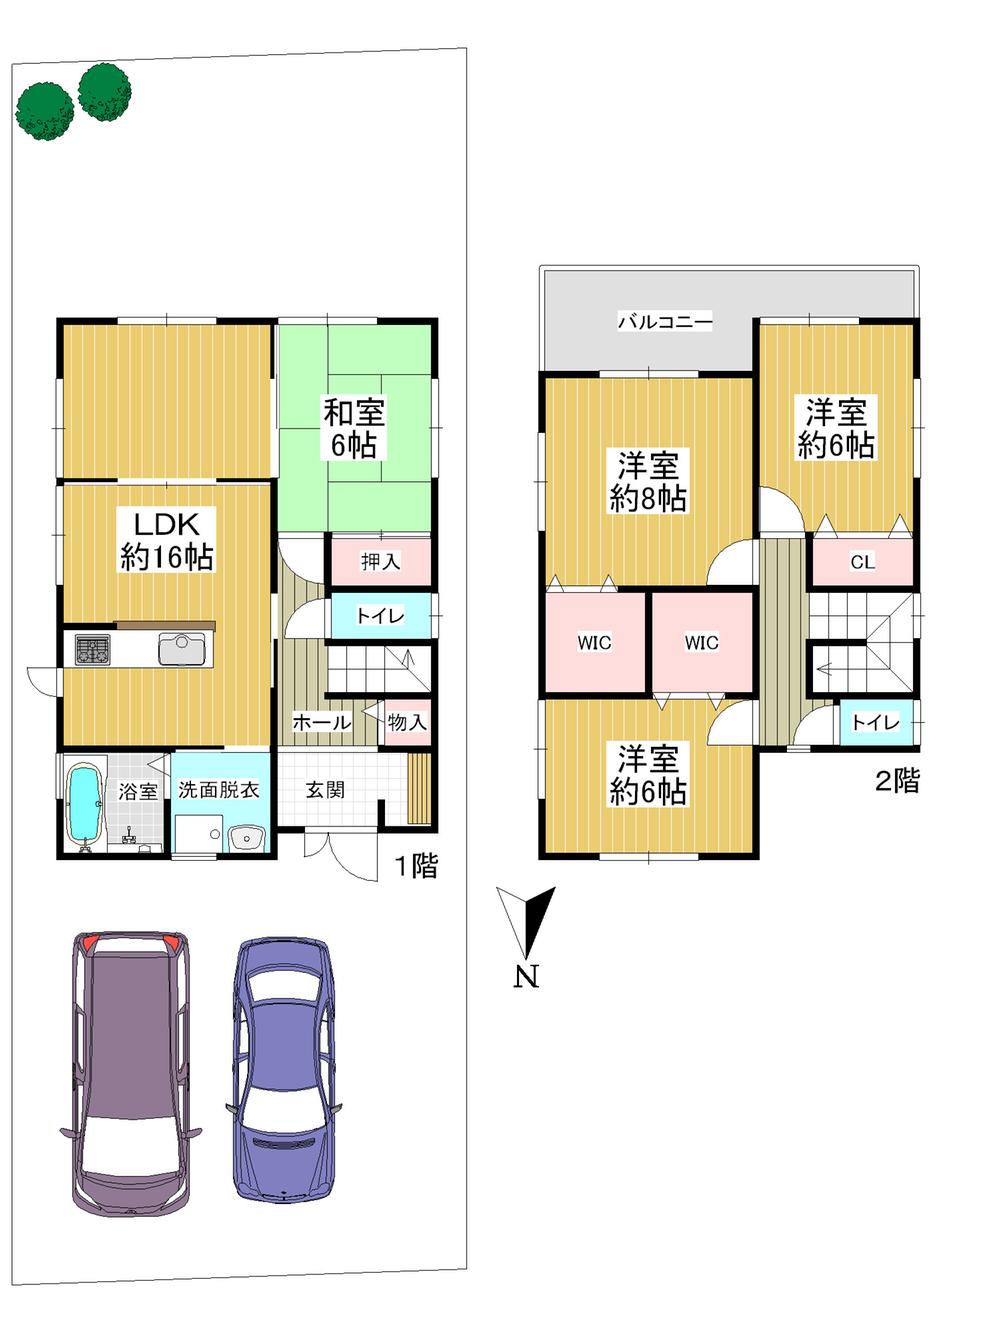 Floor plan. 31,800,000 yen, 4LDK + 2S (storeroom), Land area 161.9 sq m , Building area 106.4 sq m